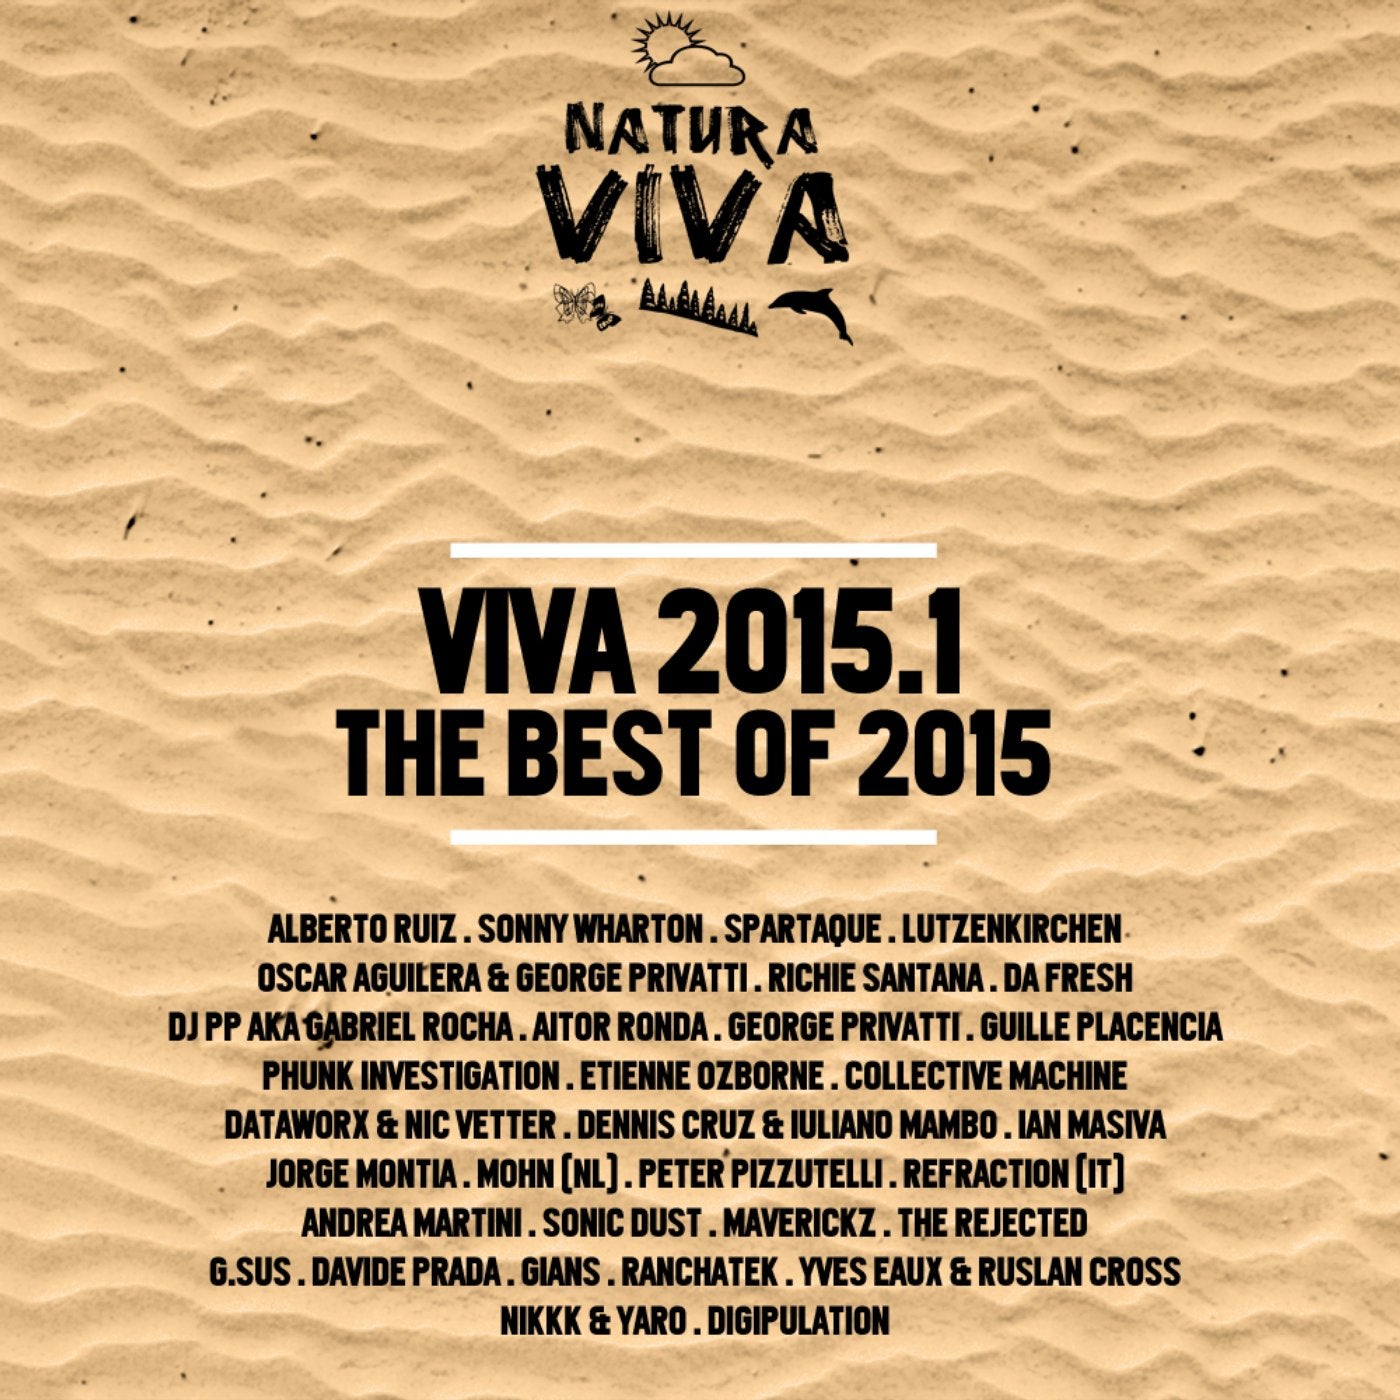 Viva 2015.1